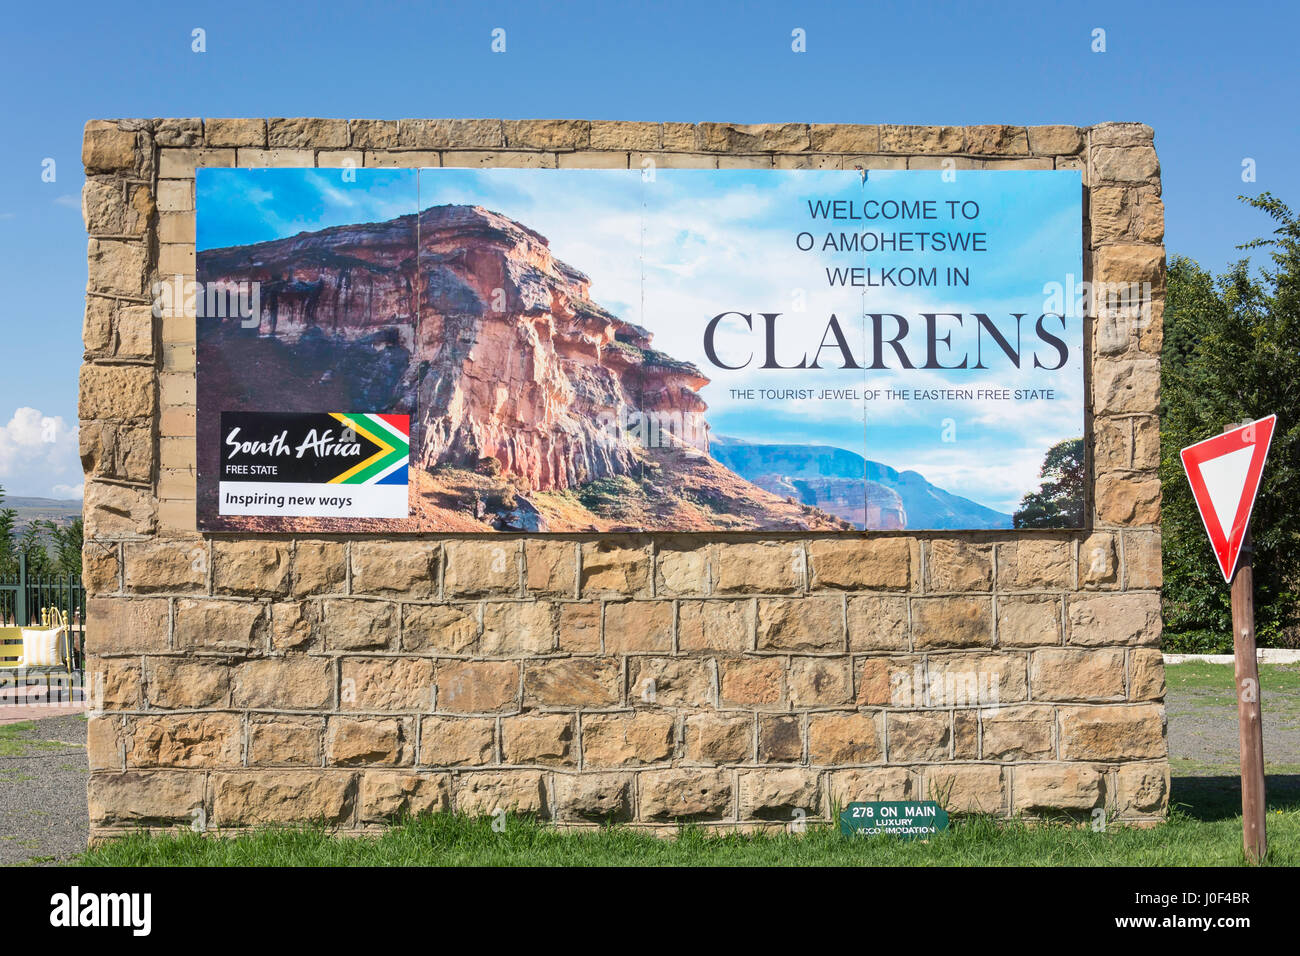 "Bienvenido a Clarens' firmar a la entrada a la ciudad, Clarens, de la provincia de Free State, Sudáfrica Foto de stock